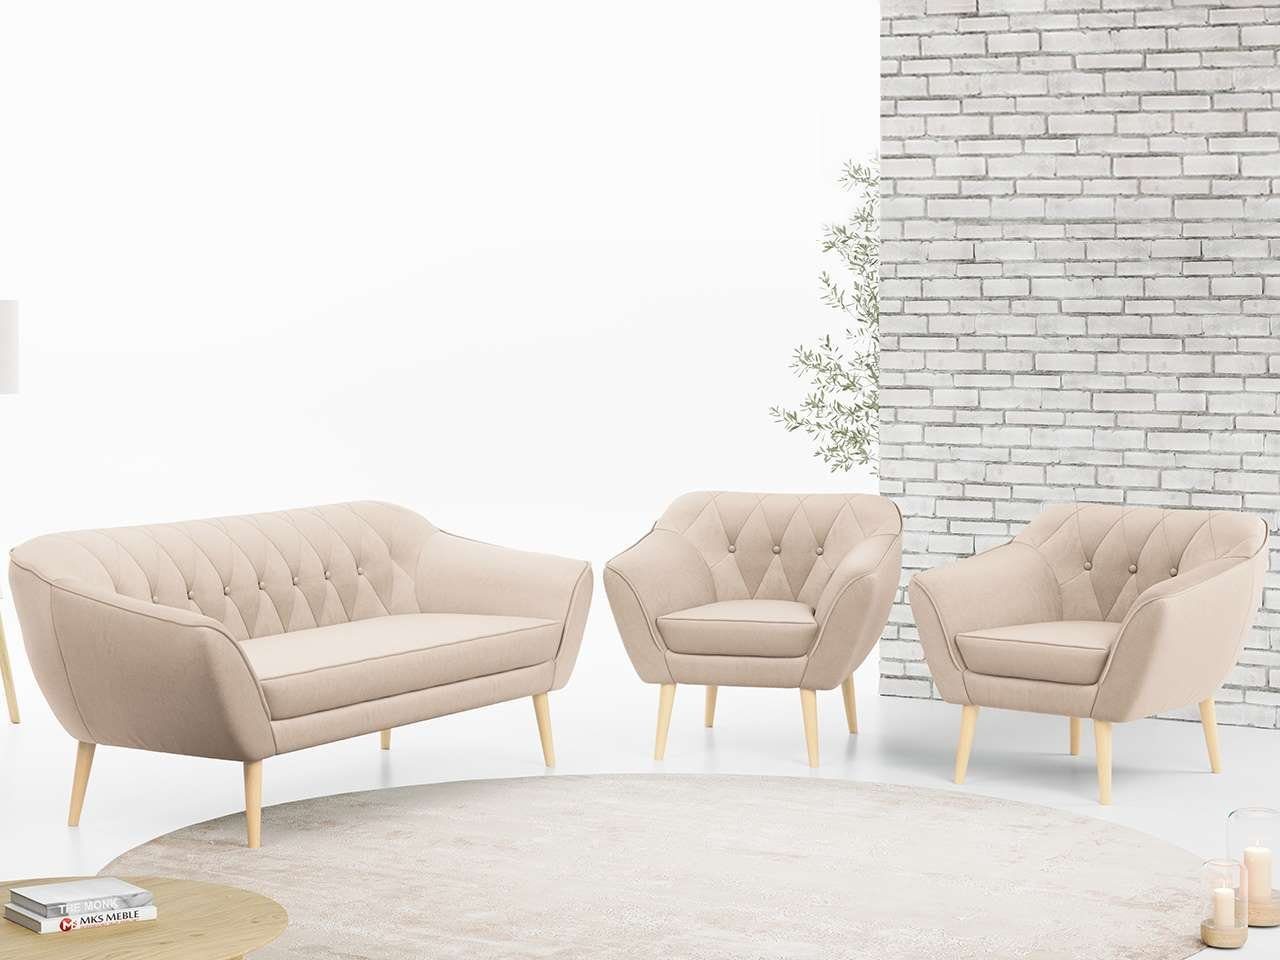 MKS MÖBEL Sofa PIRS 3 1 1, mit Relaxfunktion, Moderne Sofa Set, Skandinavische Deko Beige Casablanca